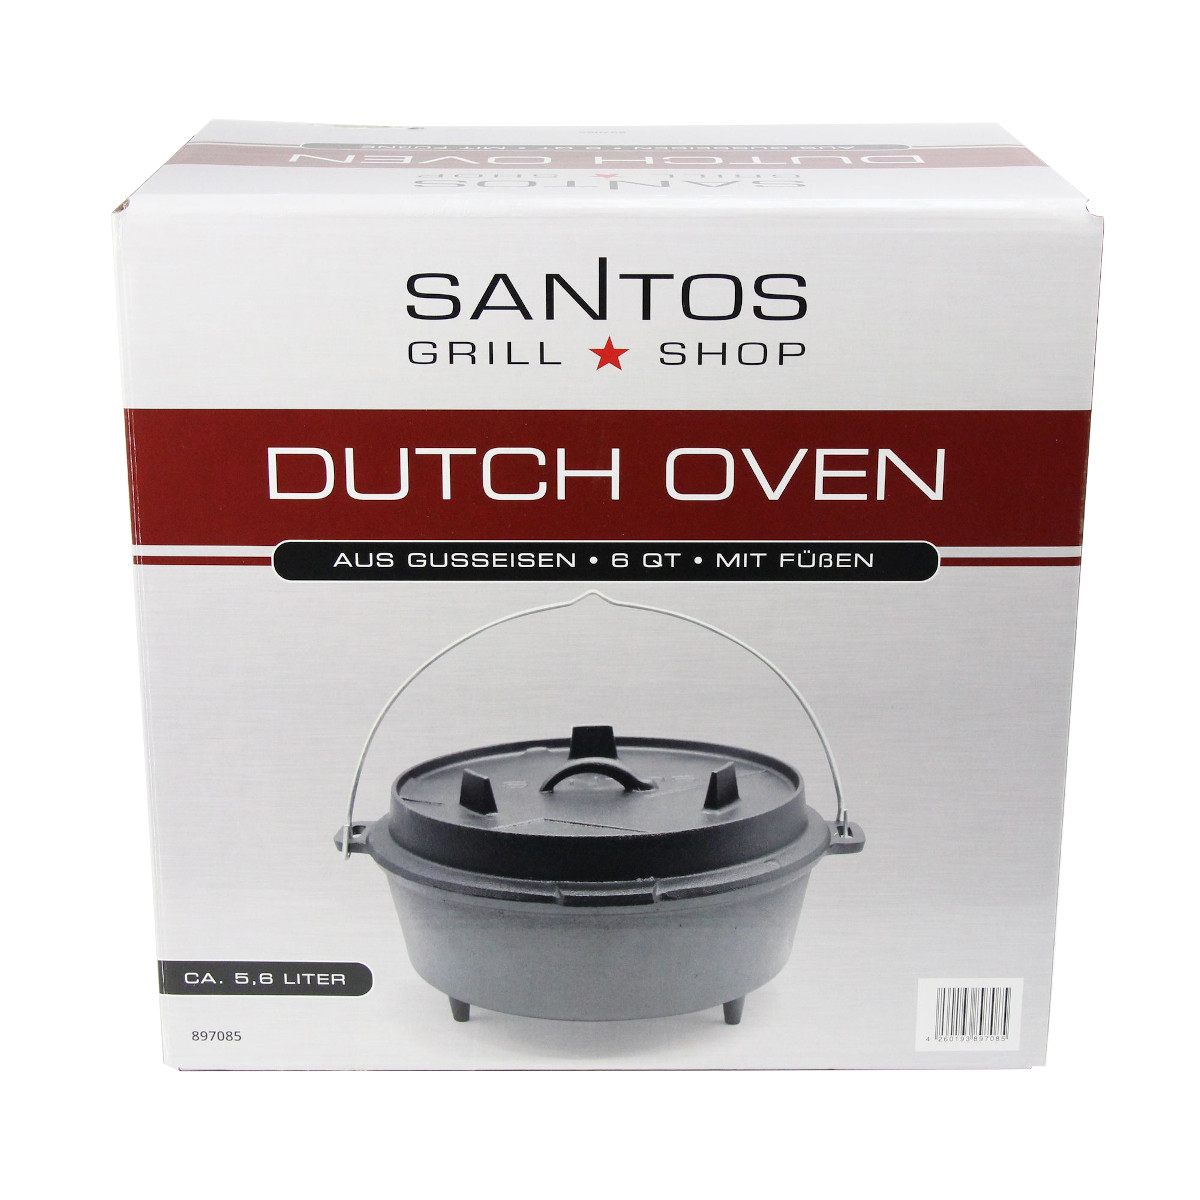 SANTOS Dutch Oven 6qt mit Füßen